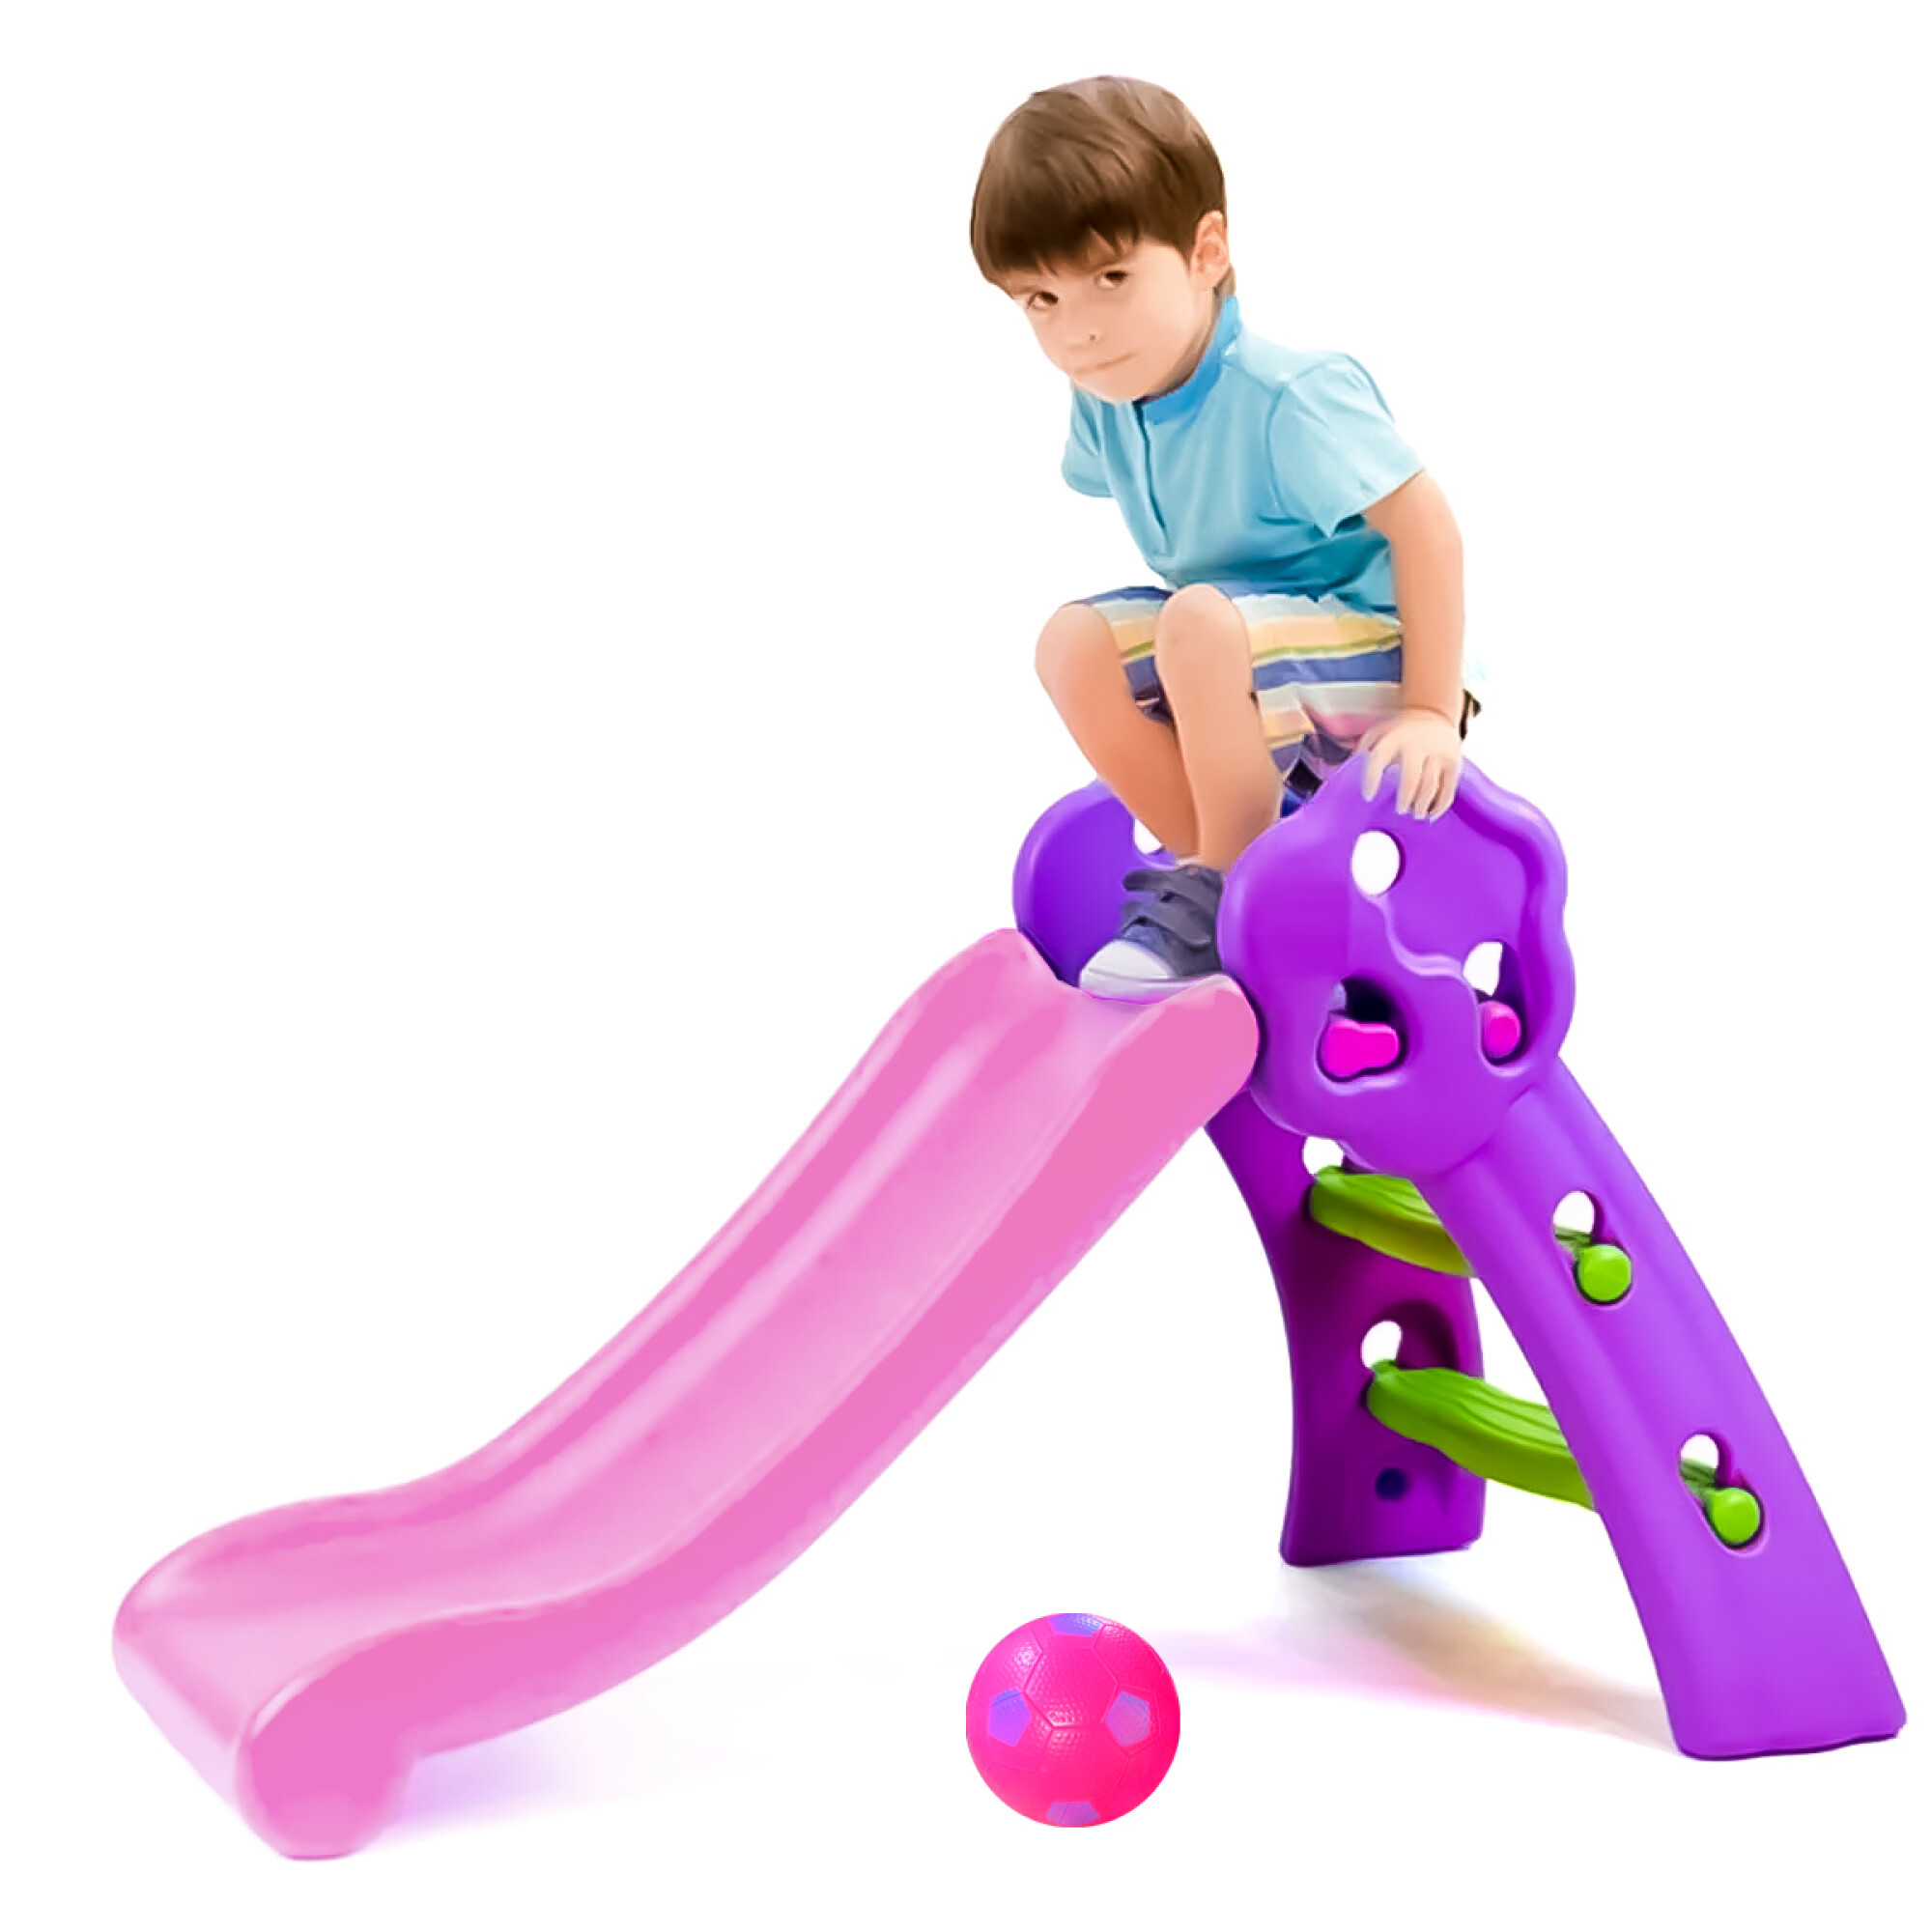 Tobogán Infantil Plástico Mediano P/niño + Aro Basket - Violeta con rosado  — El Rey del entretenimiento